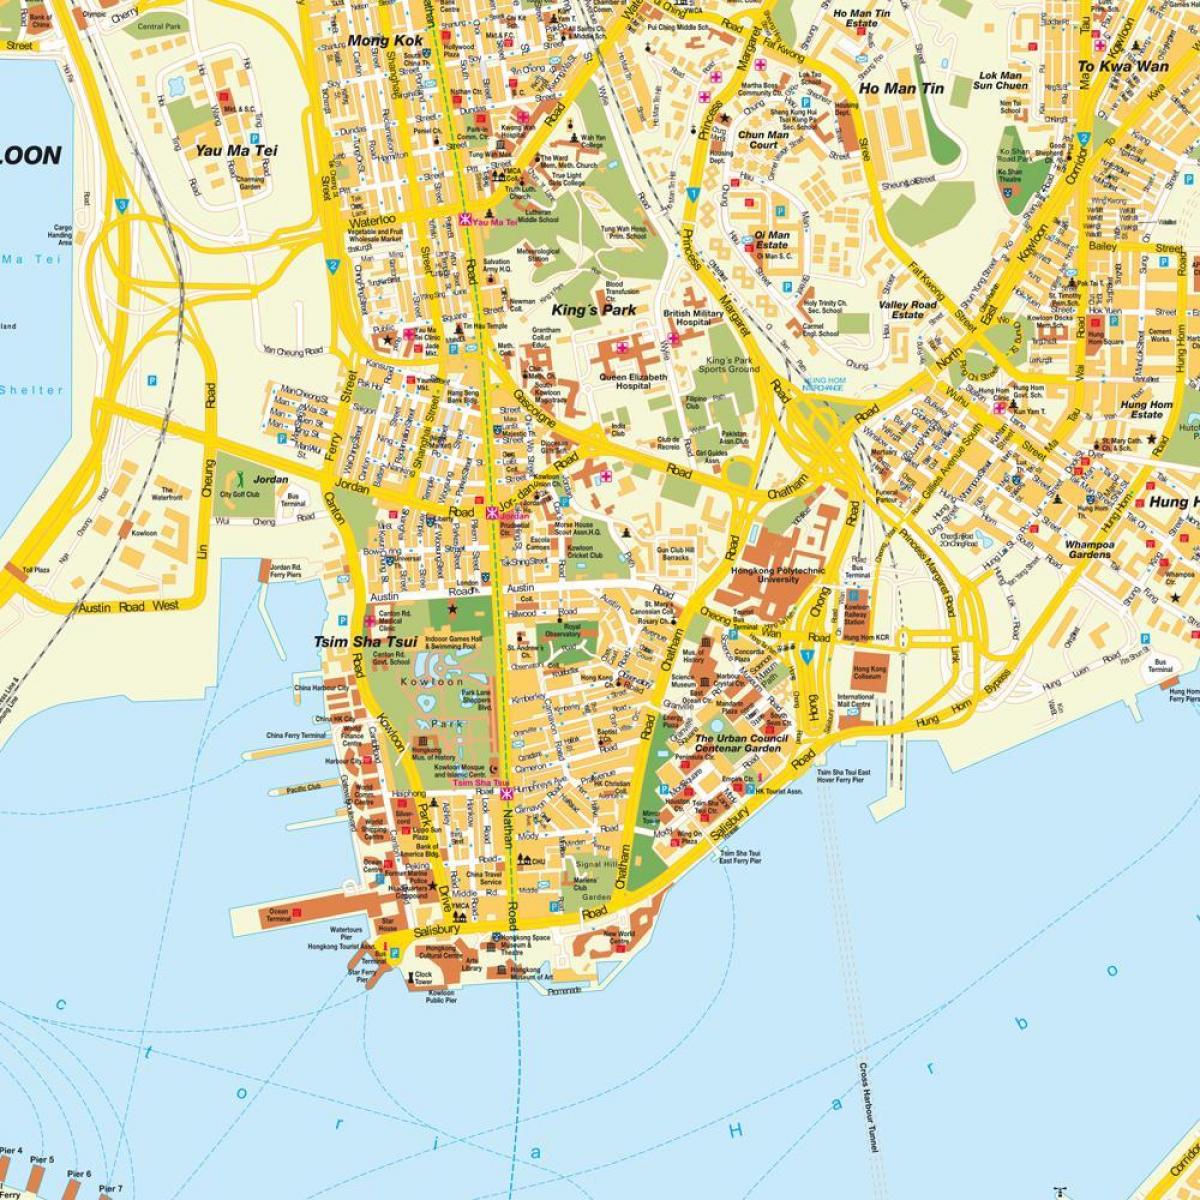 Hong kong քարտեզի վրա